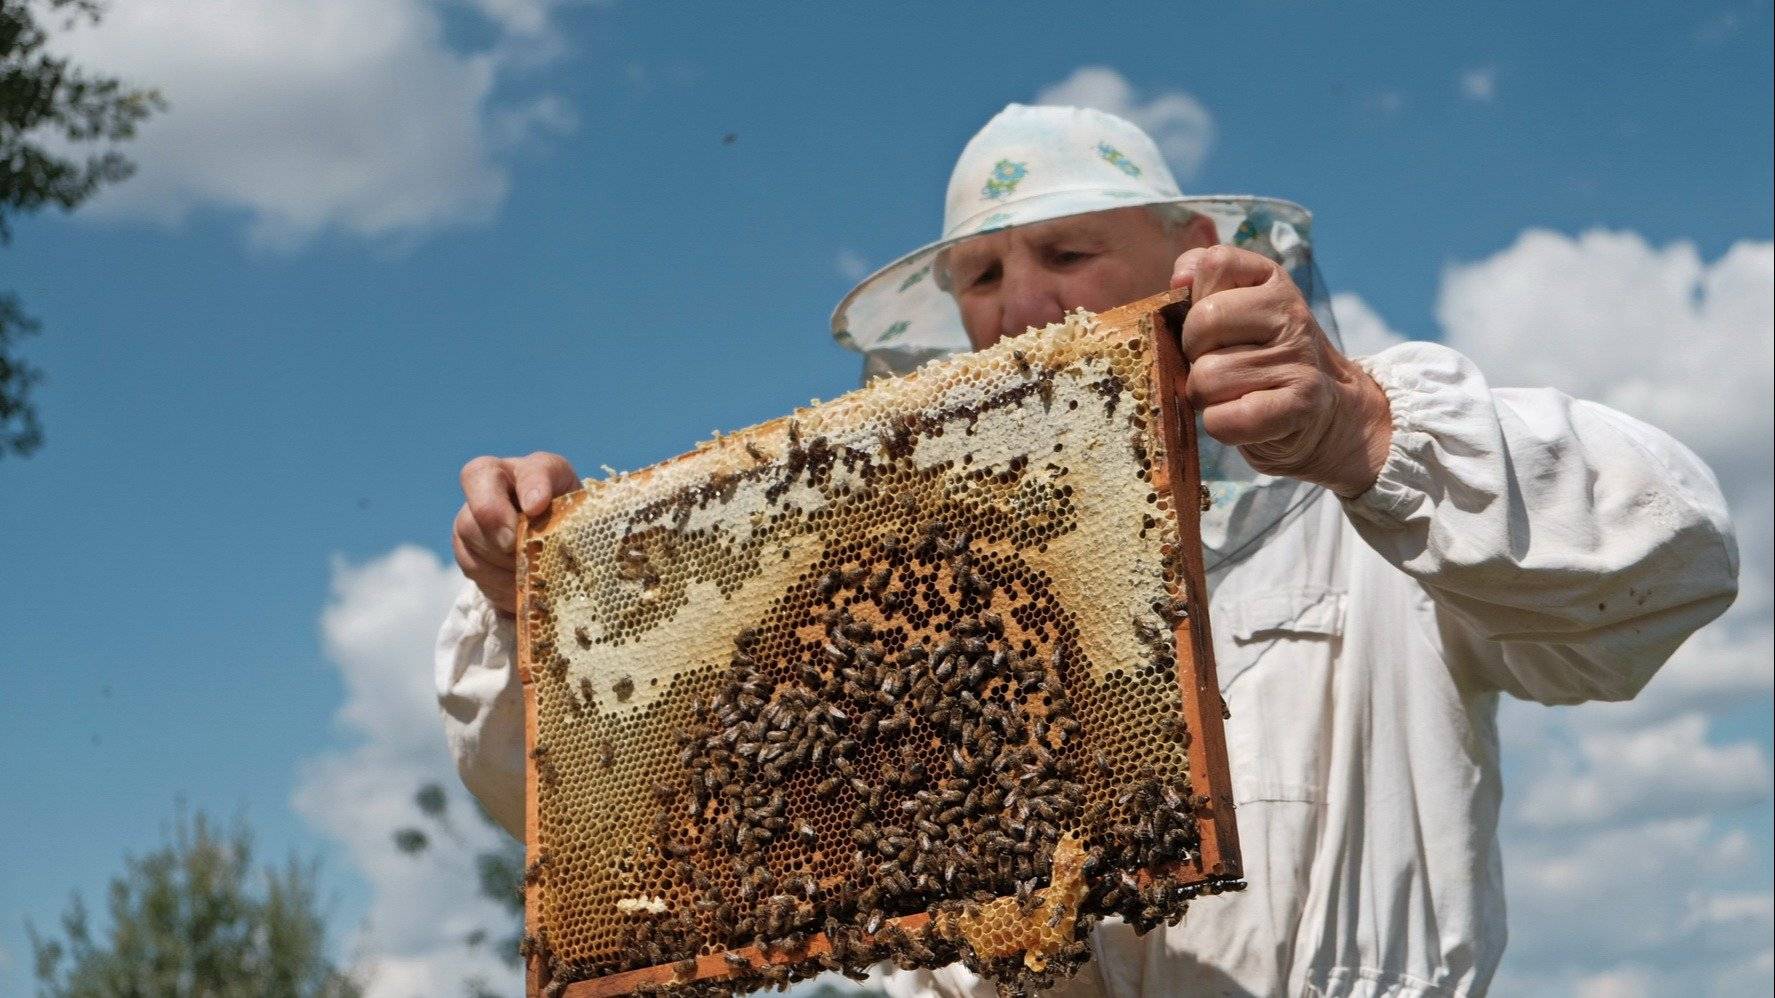 Пчеловодство республики башкортостан: состояние, проблемы, перспективы развития